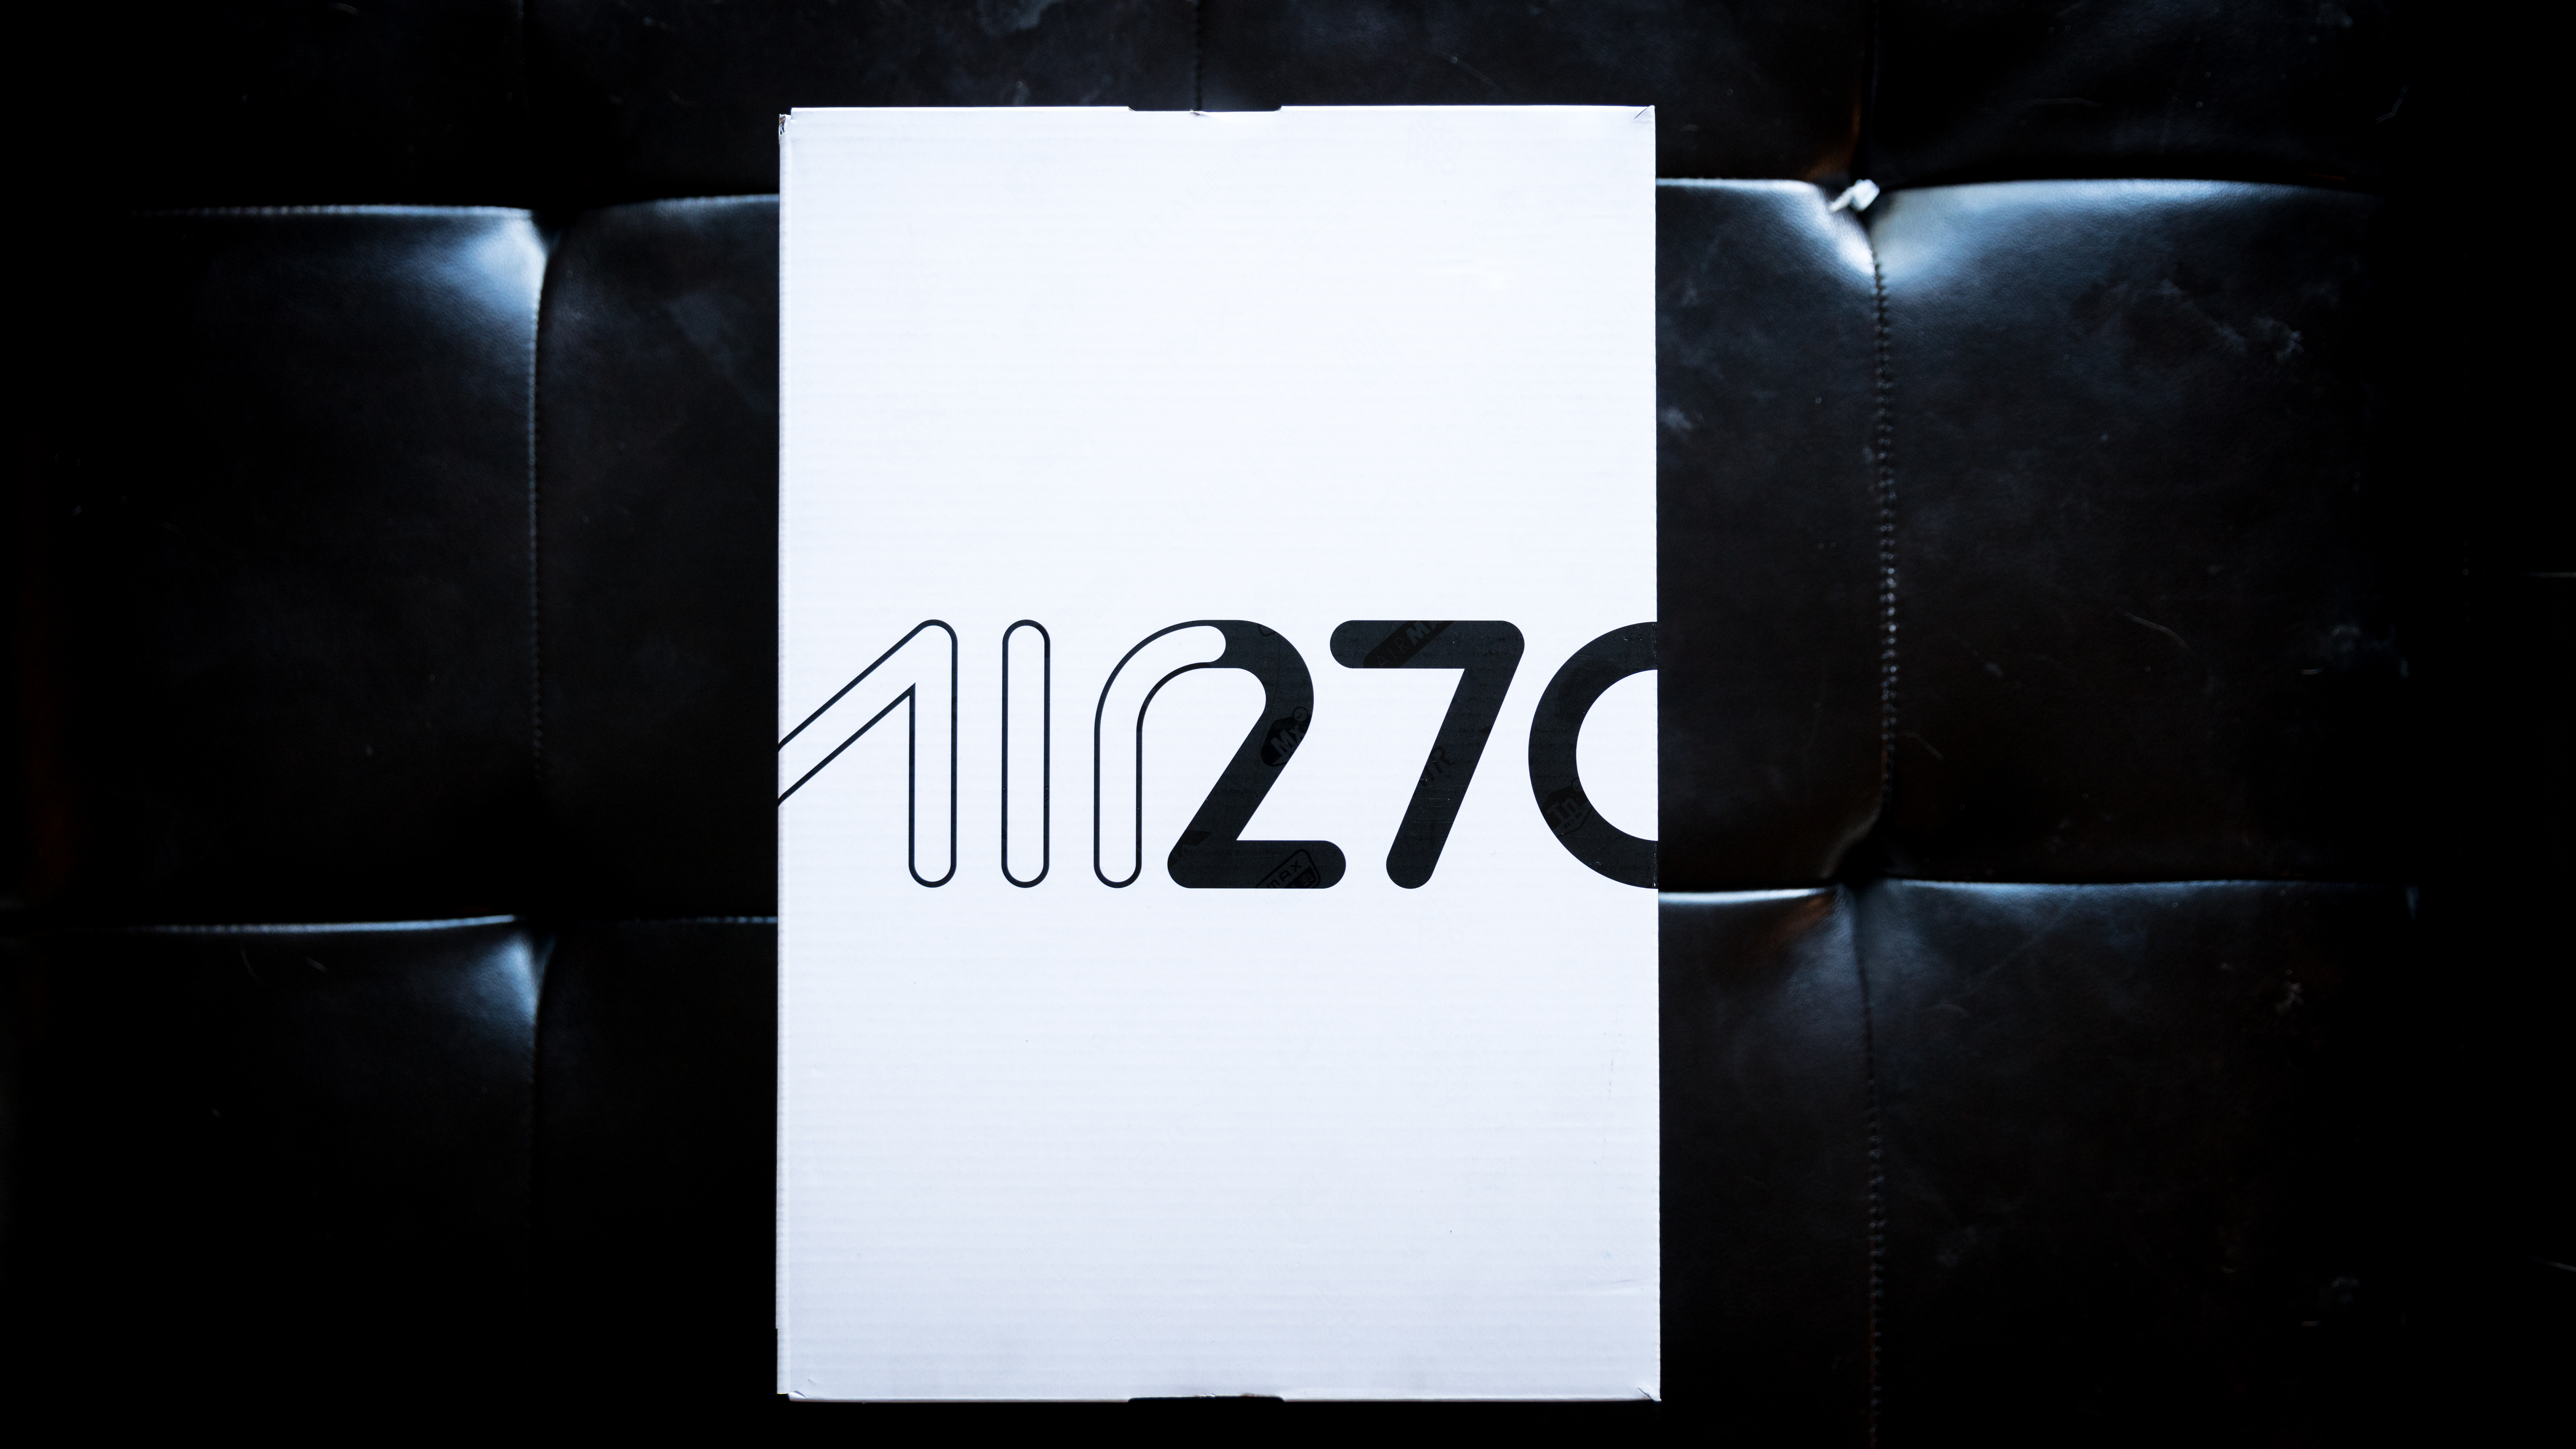 nike air 270 logo